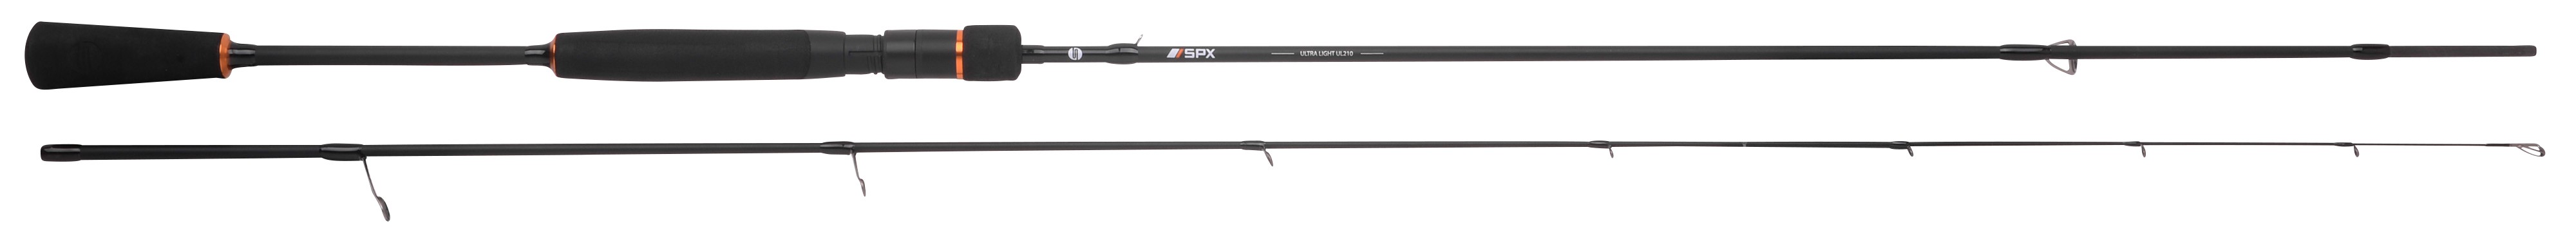 Spro SPX Ultra Light Rod 180cm 2-10g